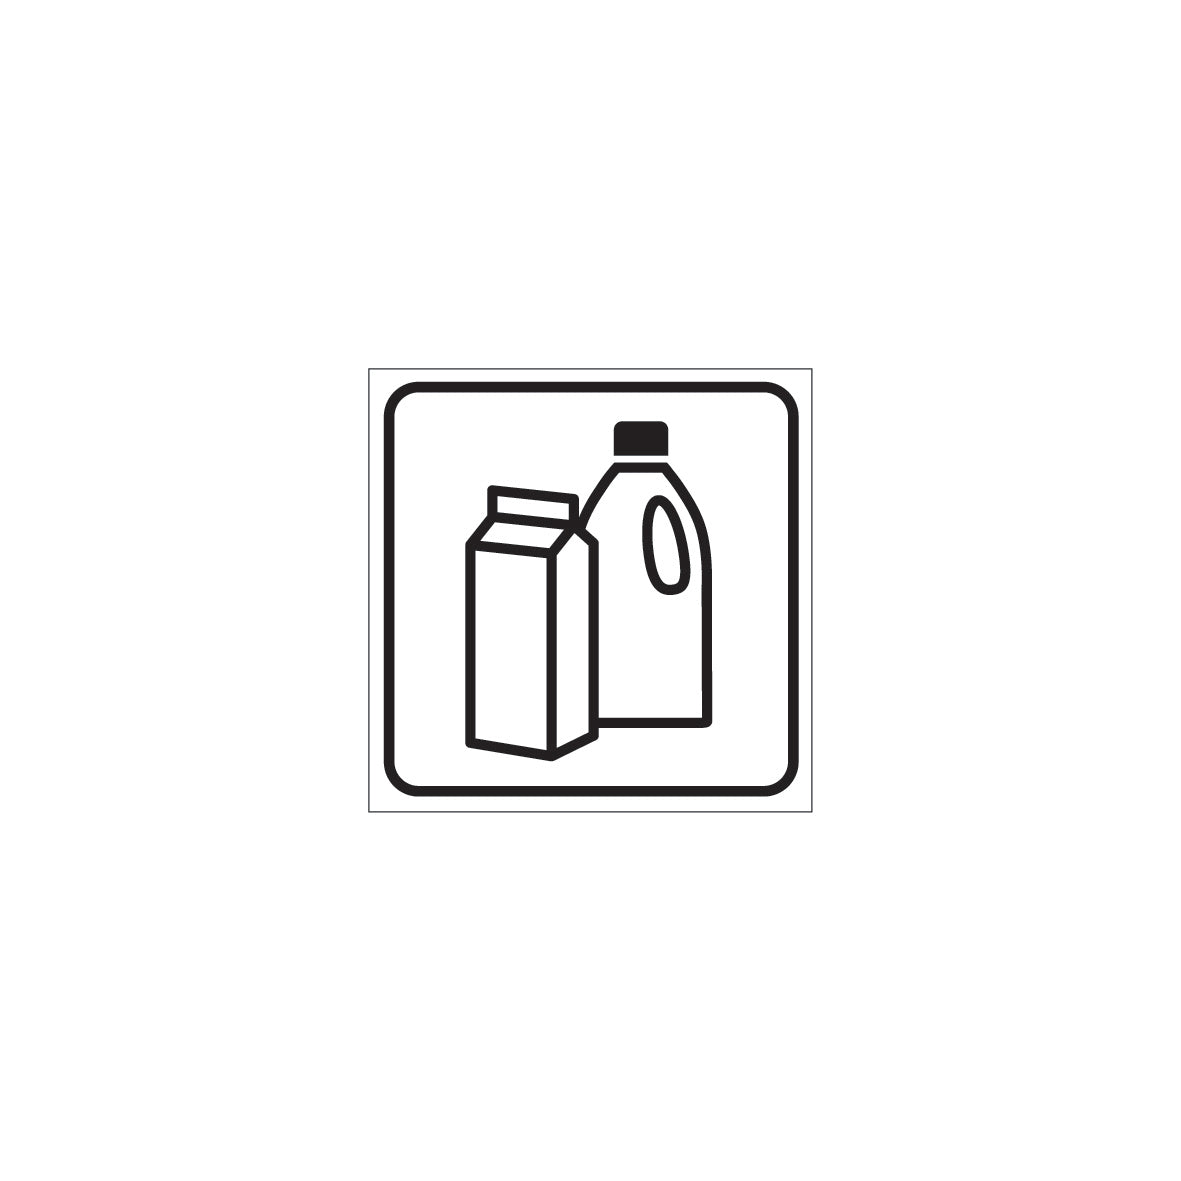 6.U-034 Plastikflaschen, Abfallentsorgung